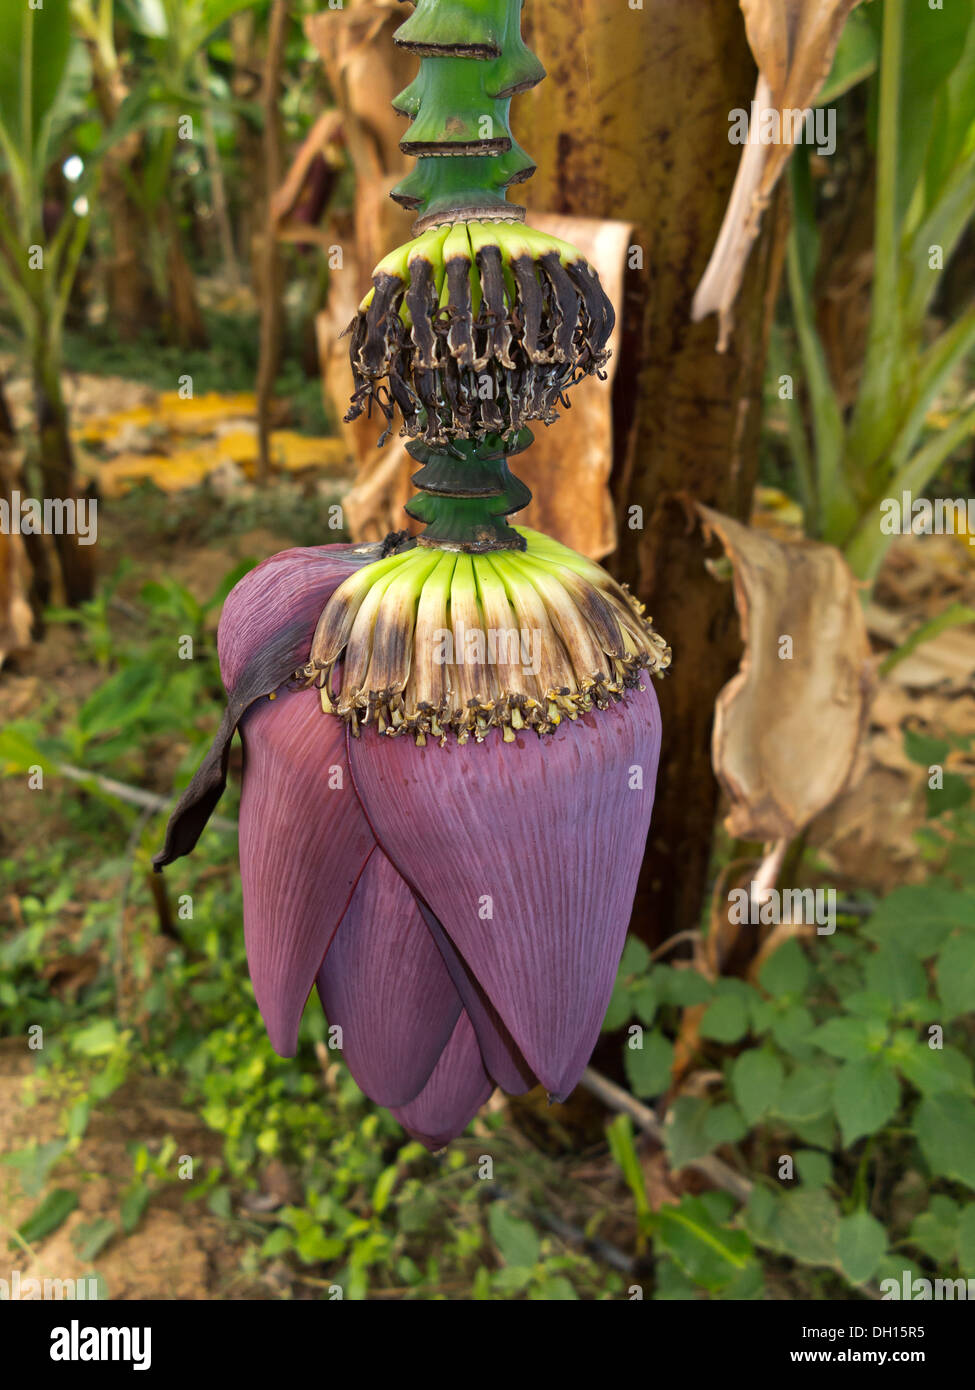 Nahaufnahme von einer geschlossenen Banane Blütenstand in eine überdachte Plantage Marokko Stockfoto